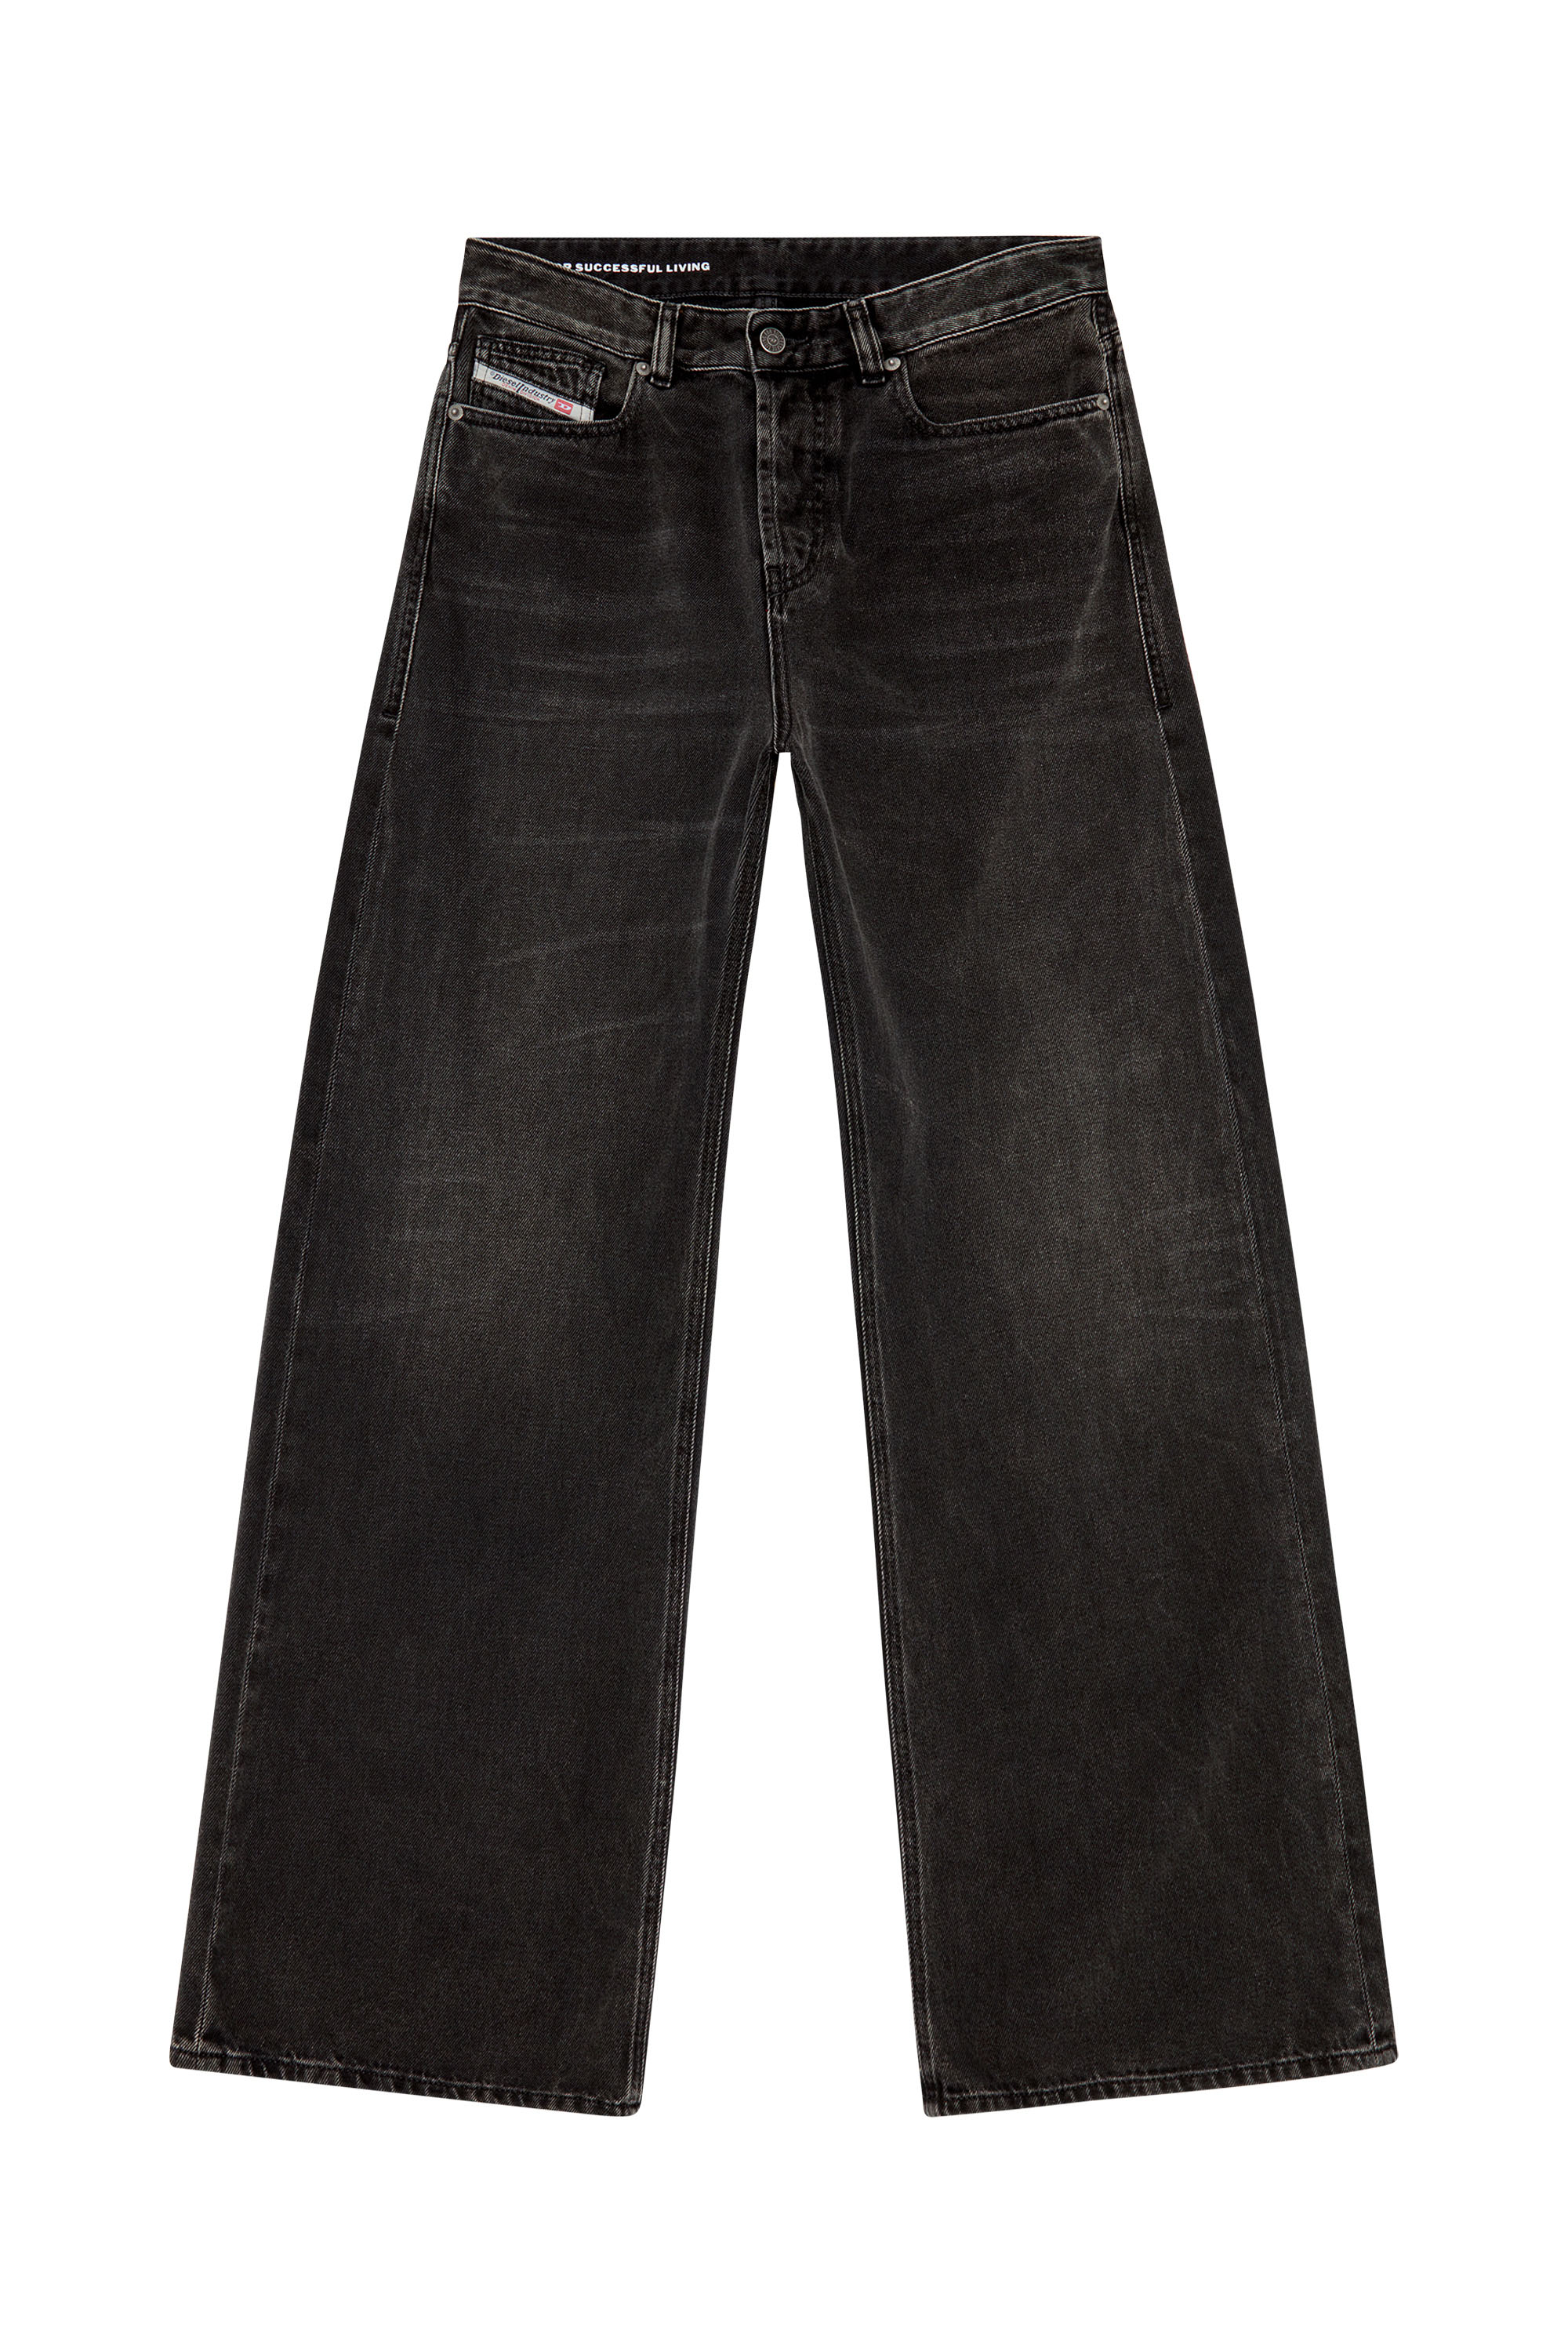 Diesel - Straight Jeans 1996 D-Sire 09J96, Black/Dark grey - Image 3